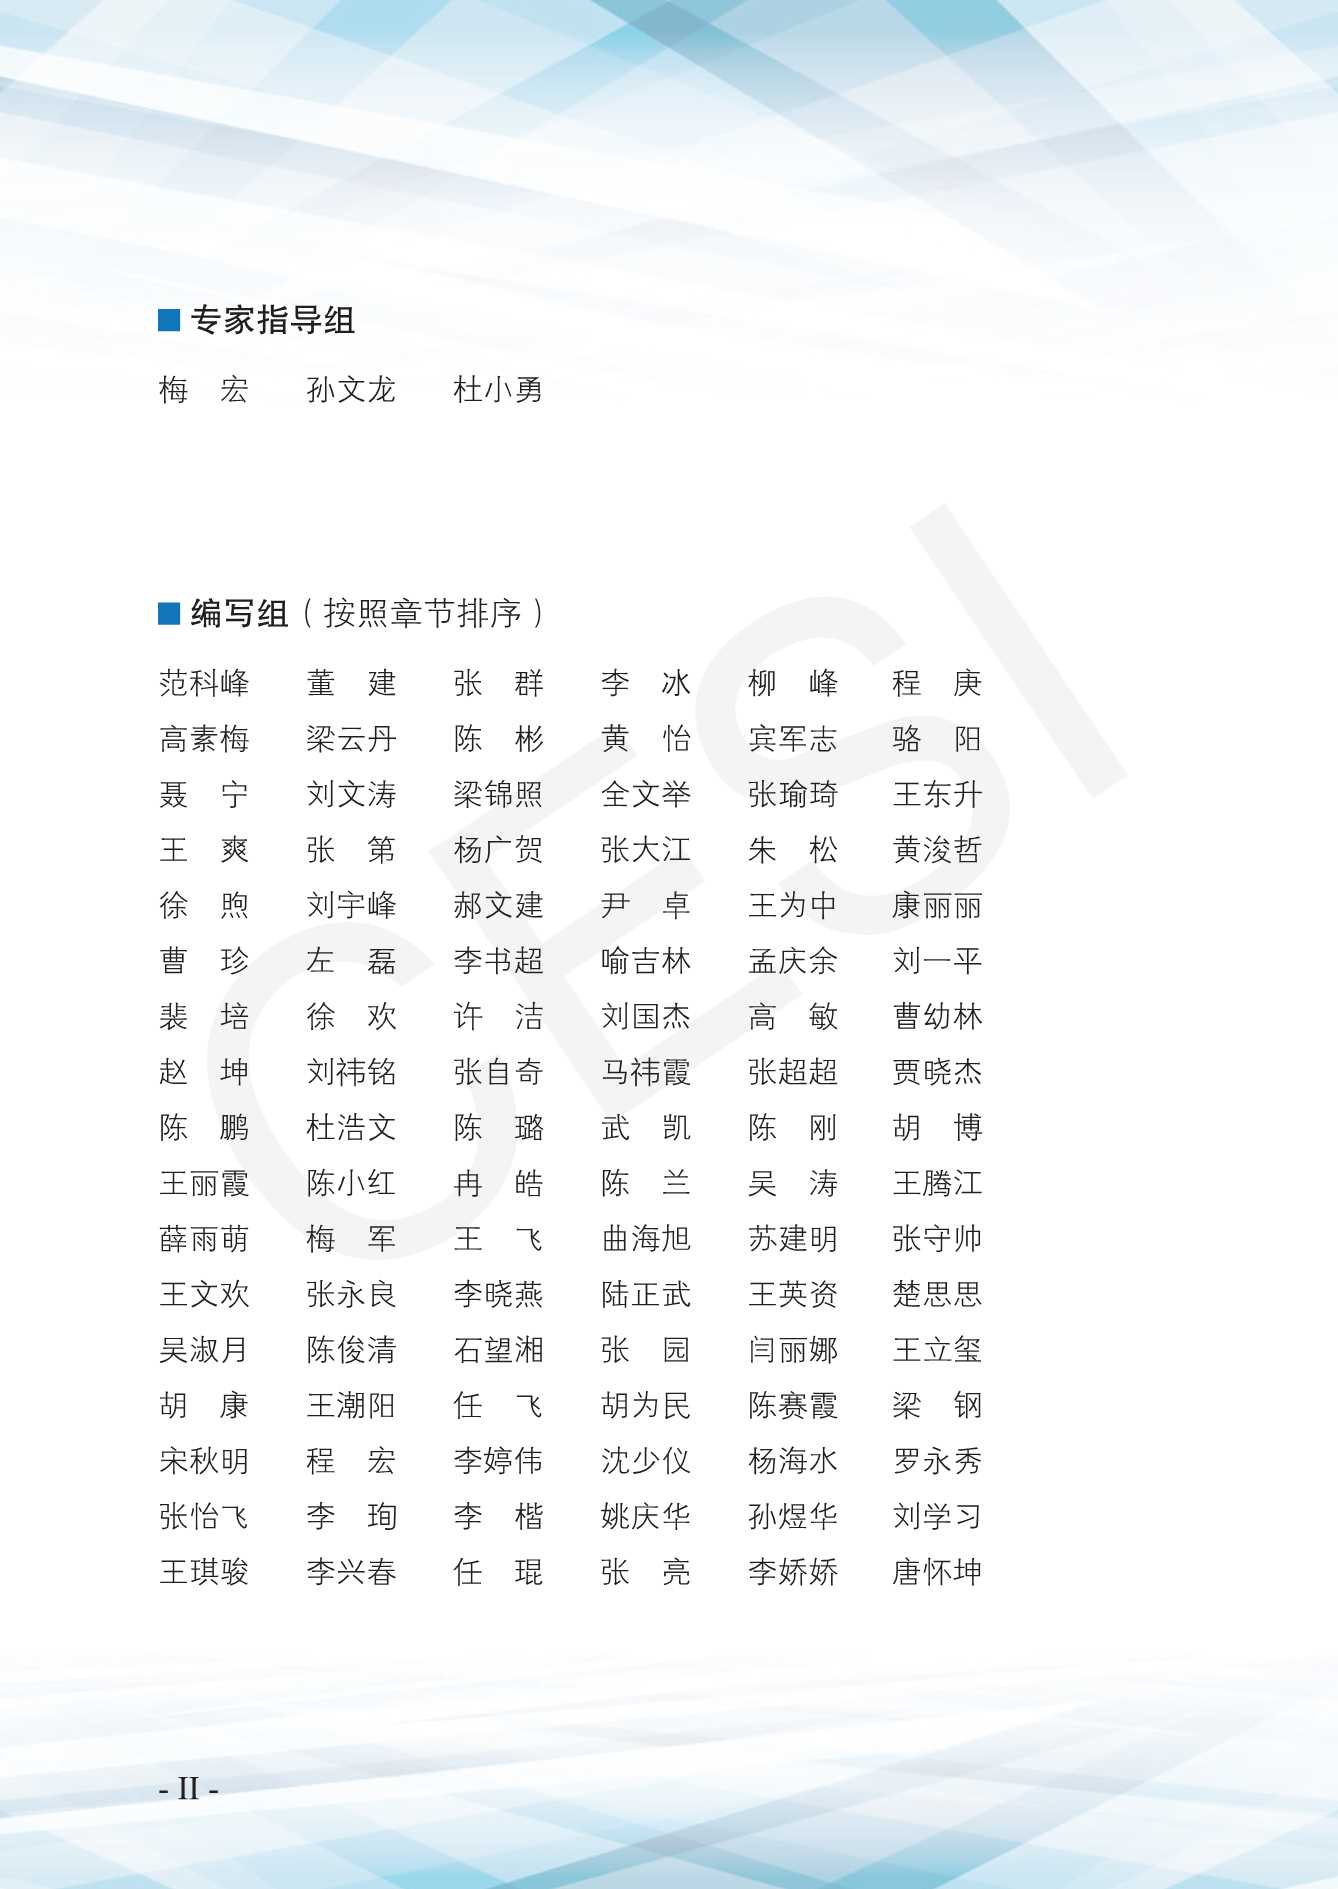 中国电子技术标准化研究院-企业数字化转型白皮书（2021版）-2021.11-83页